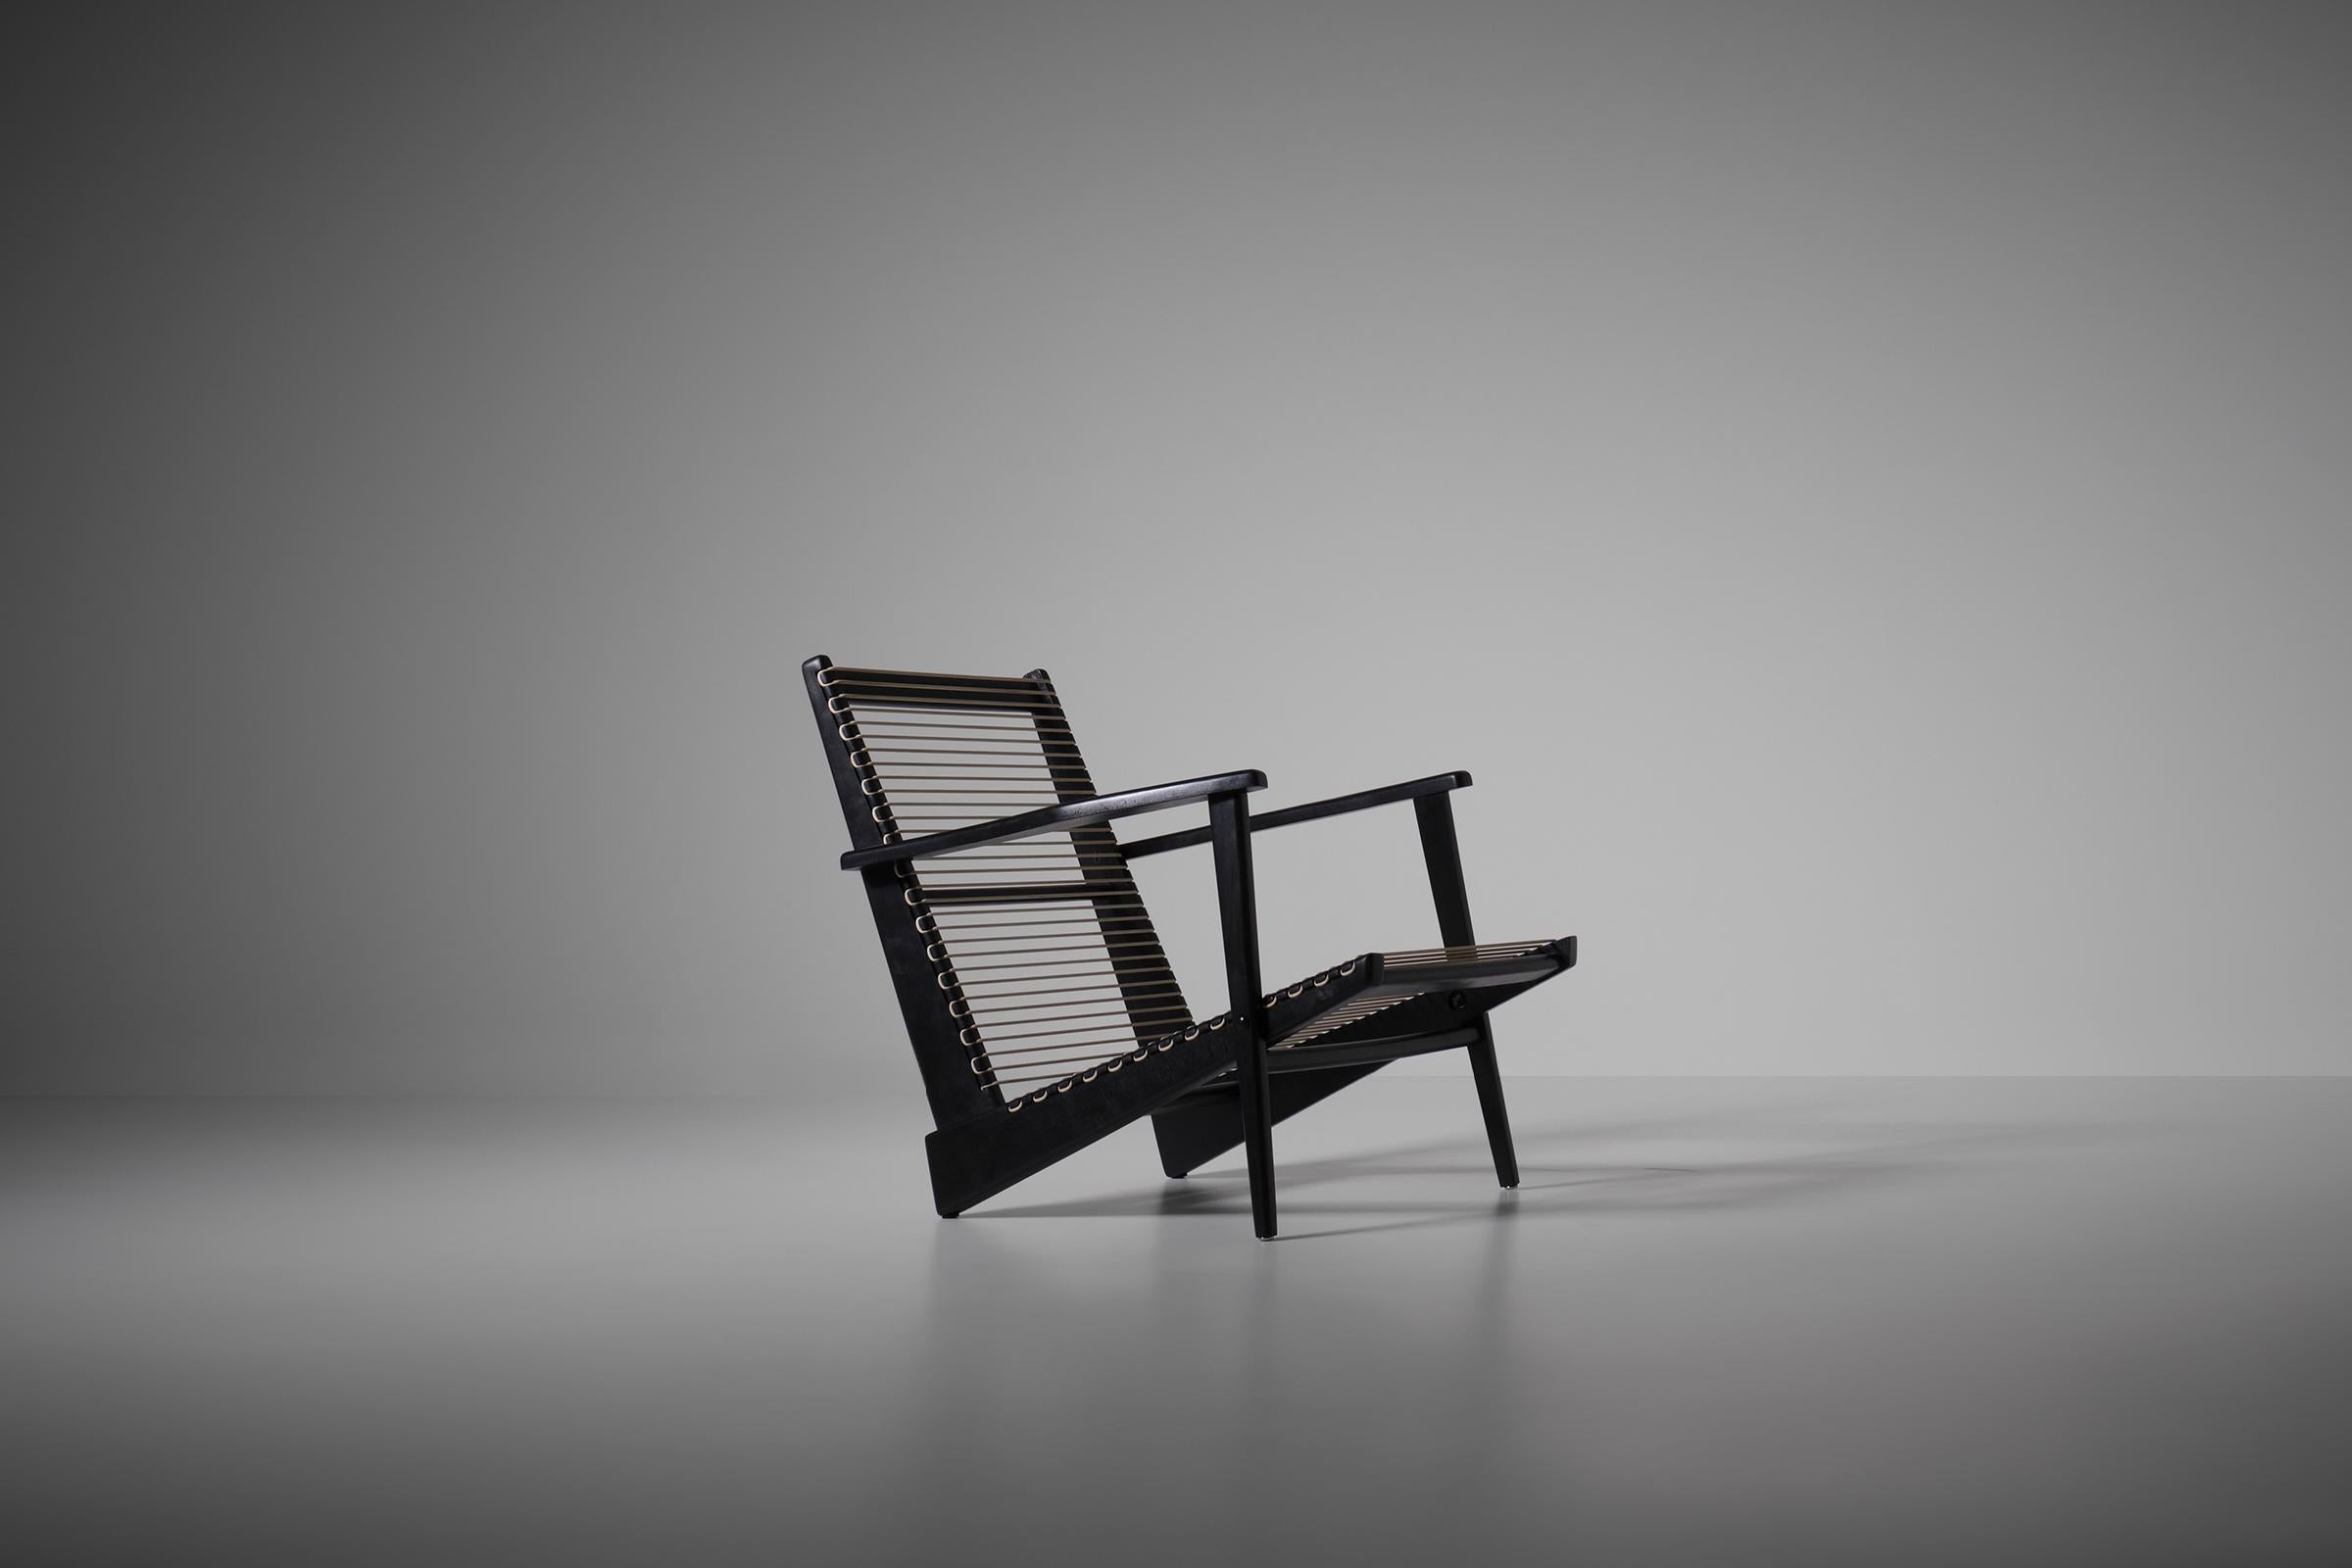 Chaise longue sculpturale modèle 'Le Pacific 2000' de Georges Tigien, France années 1950. Un design moderniste intéressant avec l'utilisation de matériaux innovants tels que le cordon en caoutchouc plastique. Les lignes nettes et épurées, associées